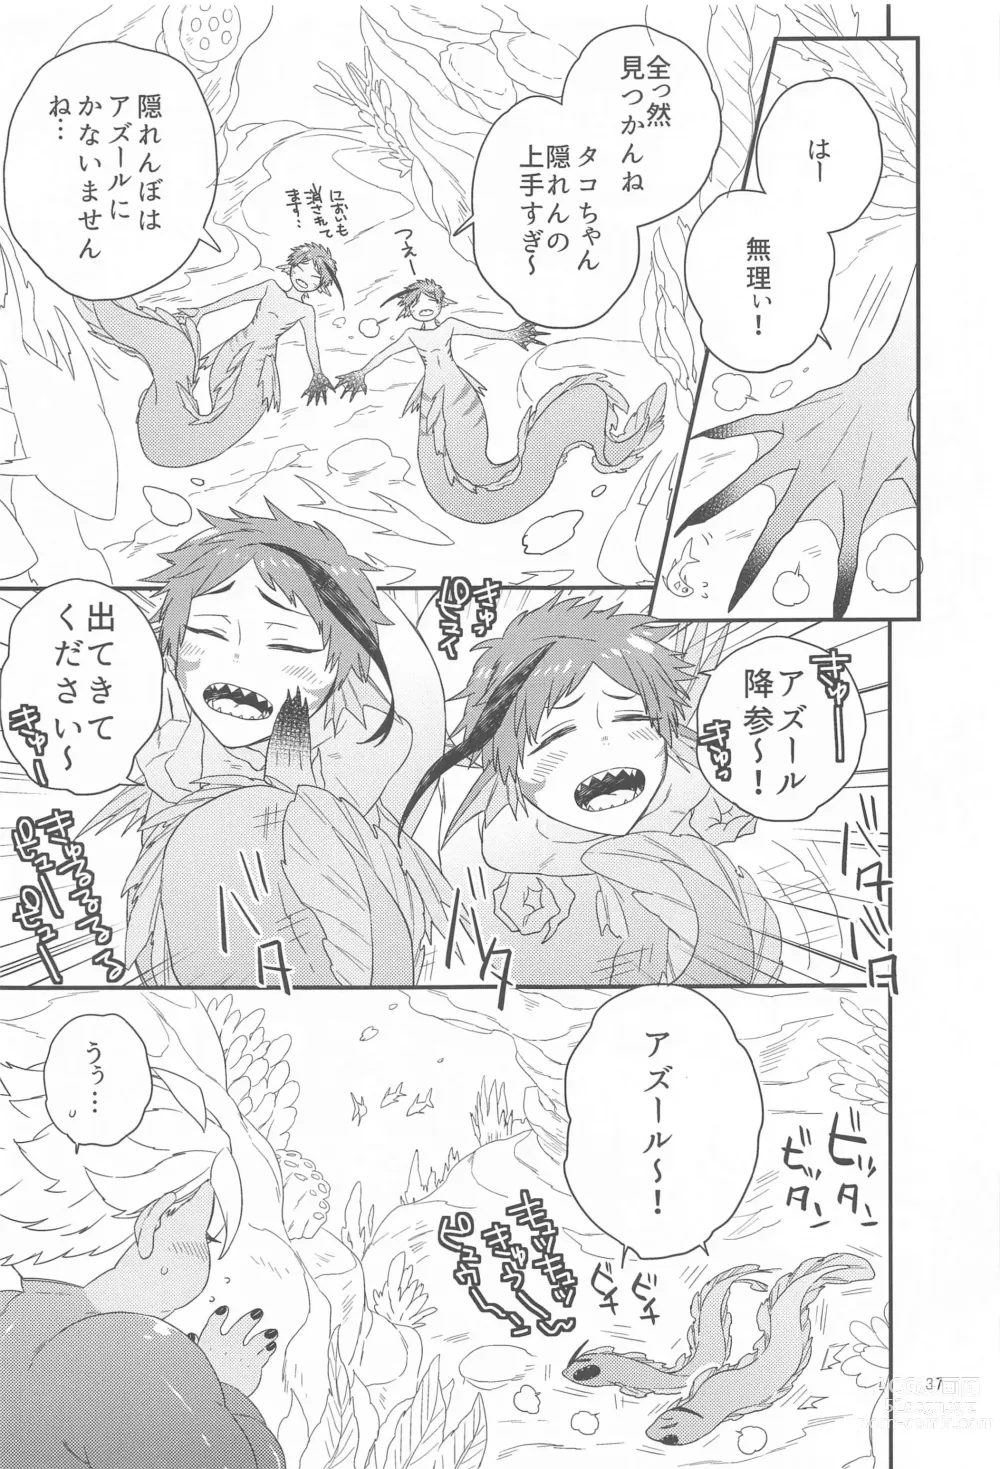 Page 36 of doujinshi Please Don’t Run Away!